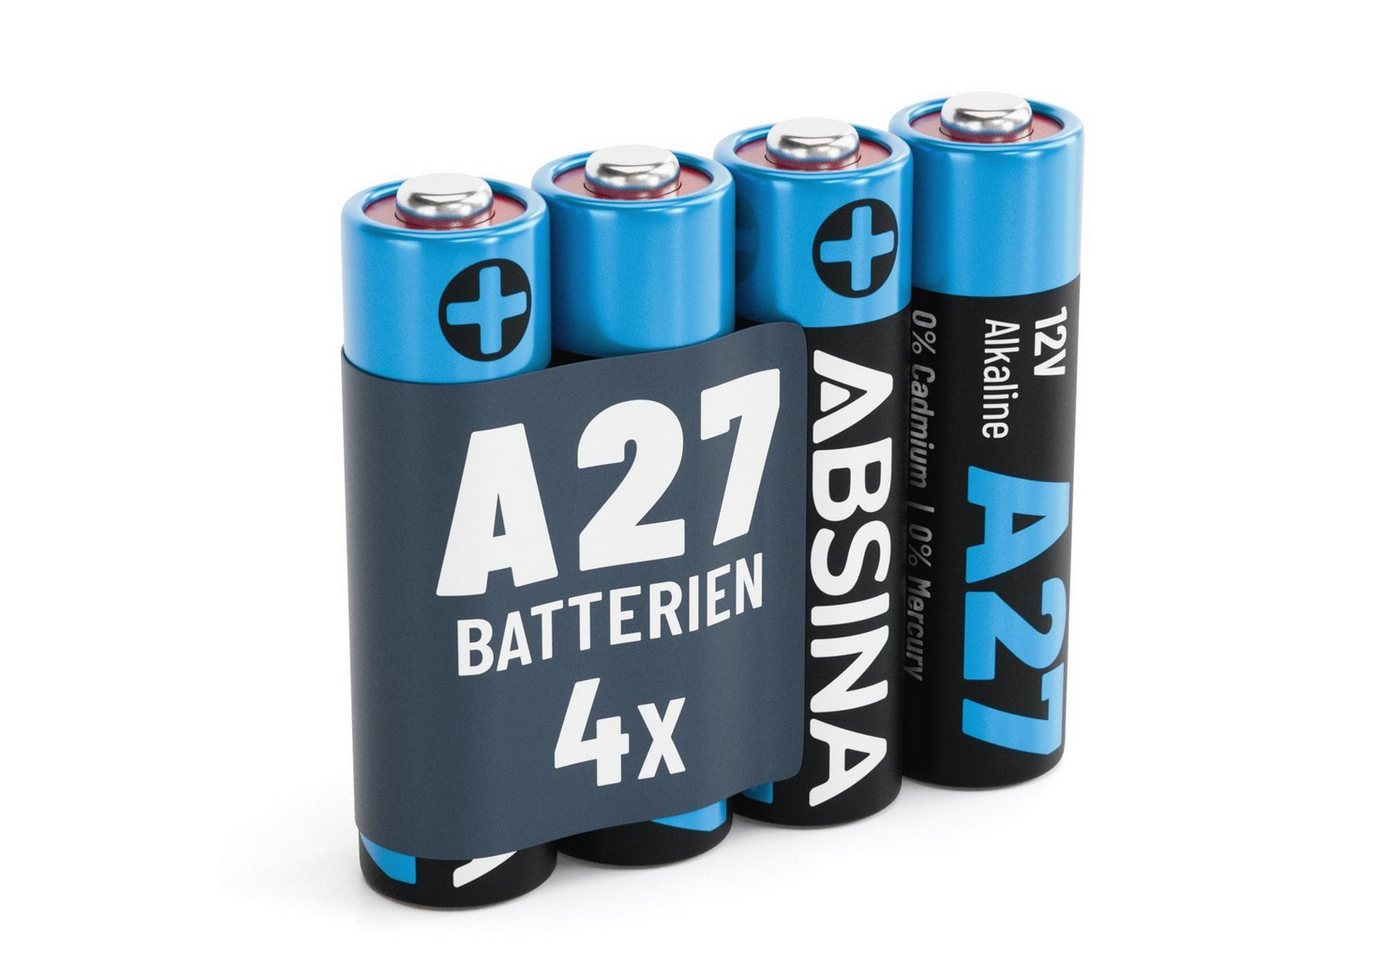 ABSINA 4x 27A 12V Batterie für Garagentoröffner, 27A 12V Alkaline mini Batterie, (1 St) von ABSINA